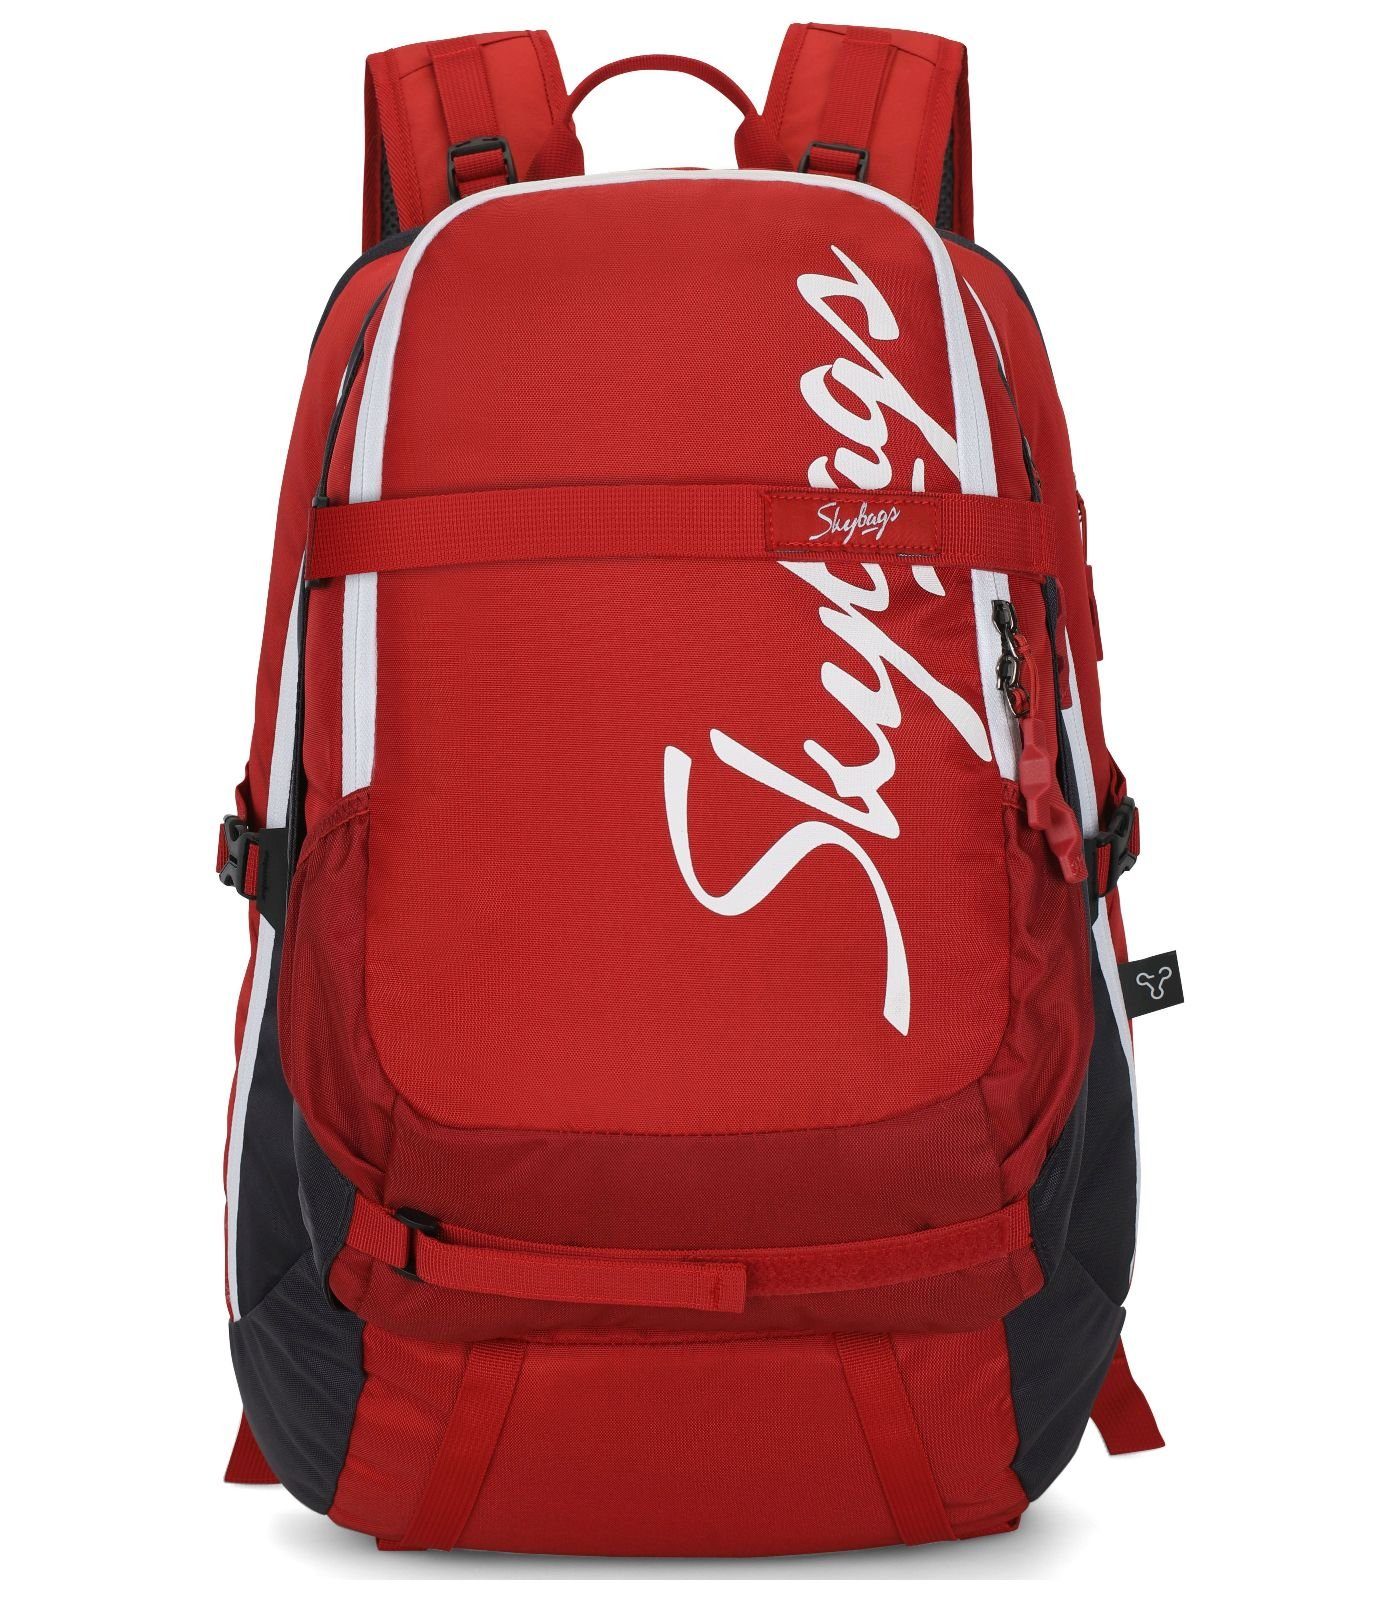 Skybags Rucksack Taschen Textil | Rucksäcke